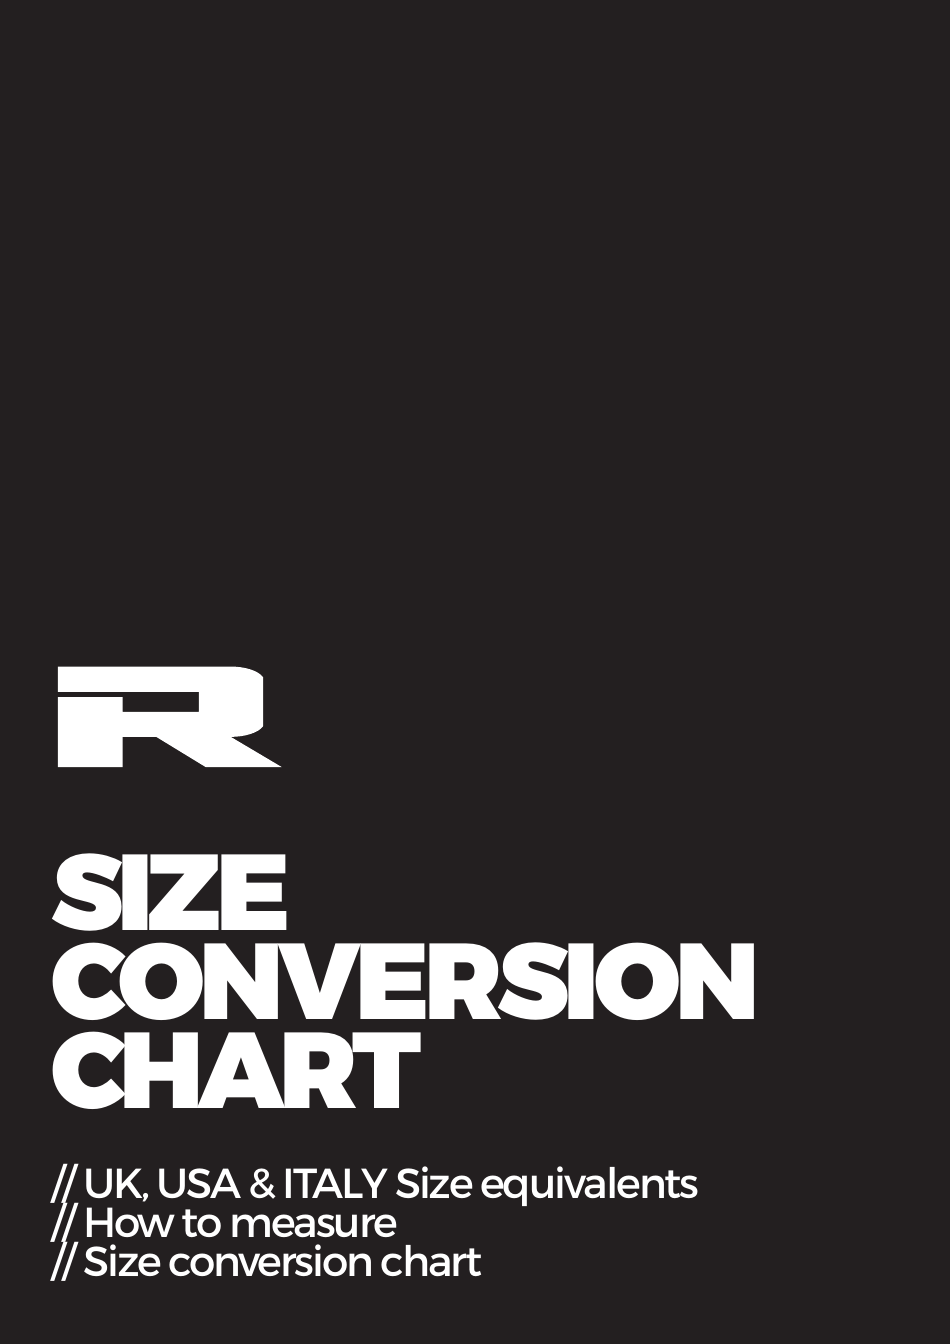 Size Conversion Chart (Eu / UK / USA / Italy), Page 1